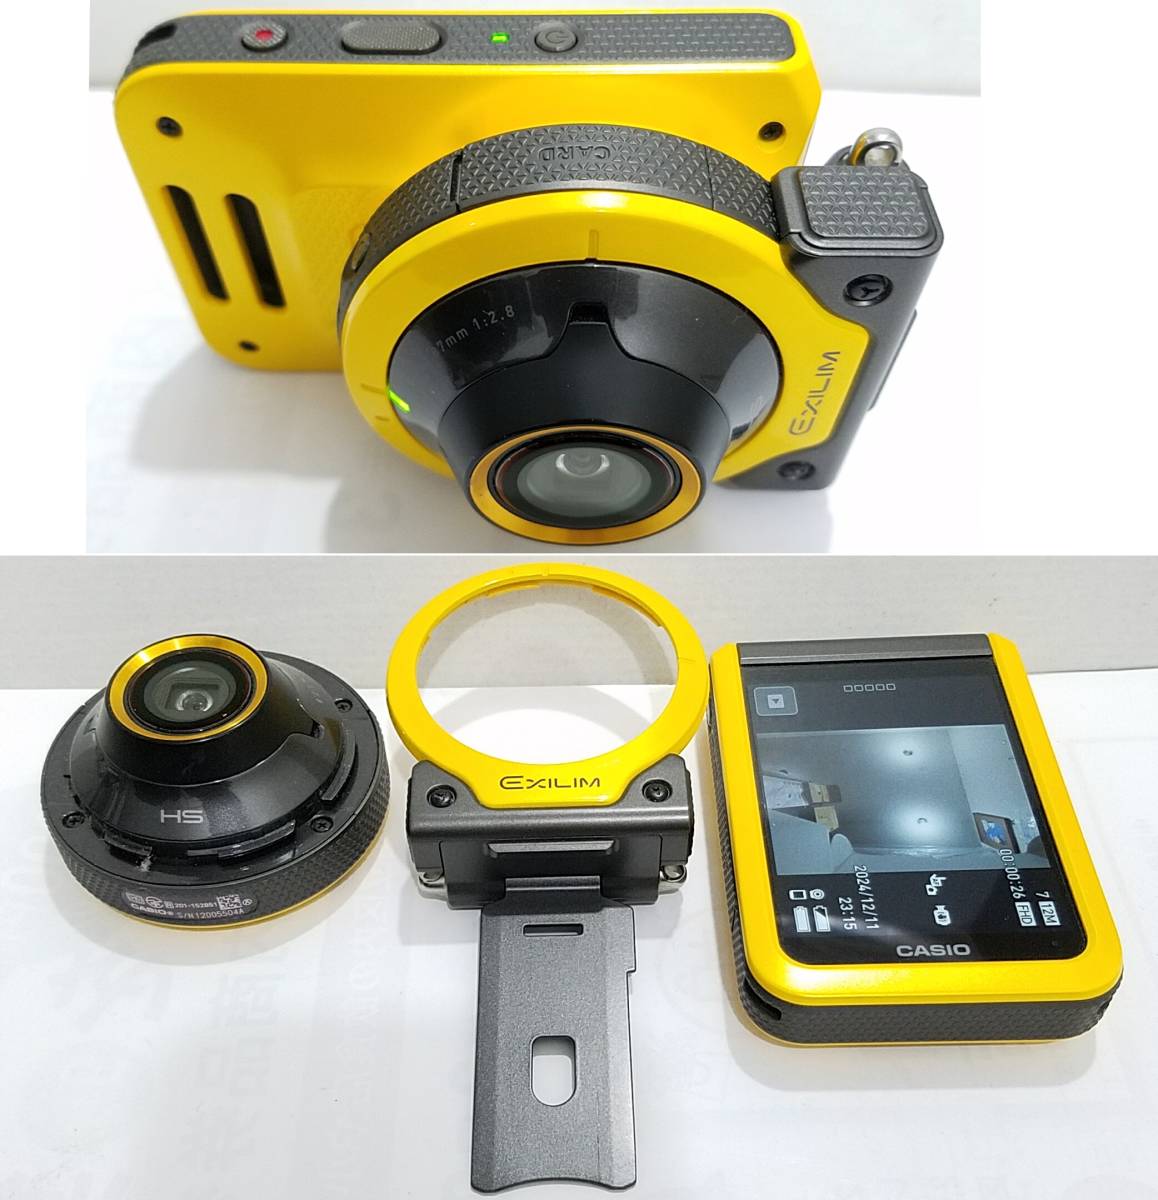 極美品カシオEXILIM EX-FR100デジタルカメラ1020万画素アウトドア タフネス性能(耐衝撃 防水 防塵 耐低温)Wi-Fi/Bluetooth静止画 動画CASIO_画像2